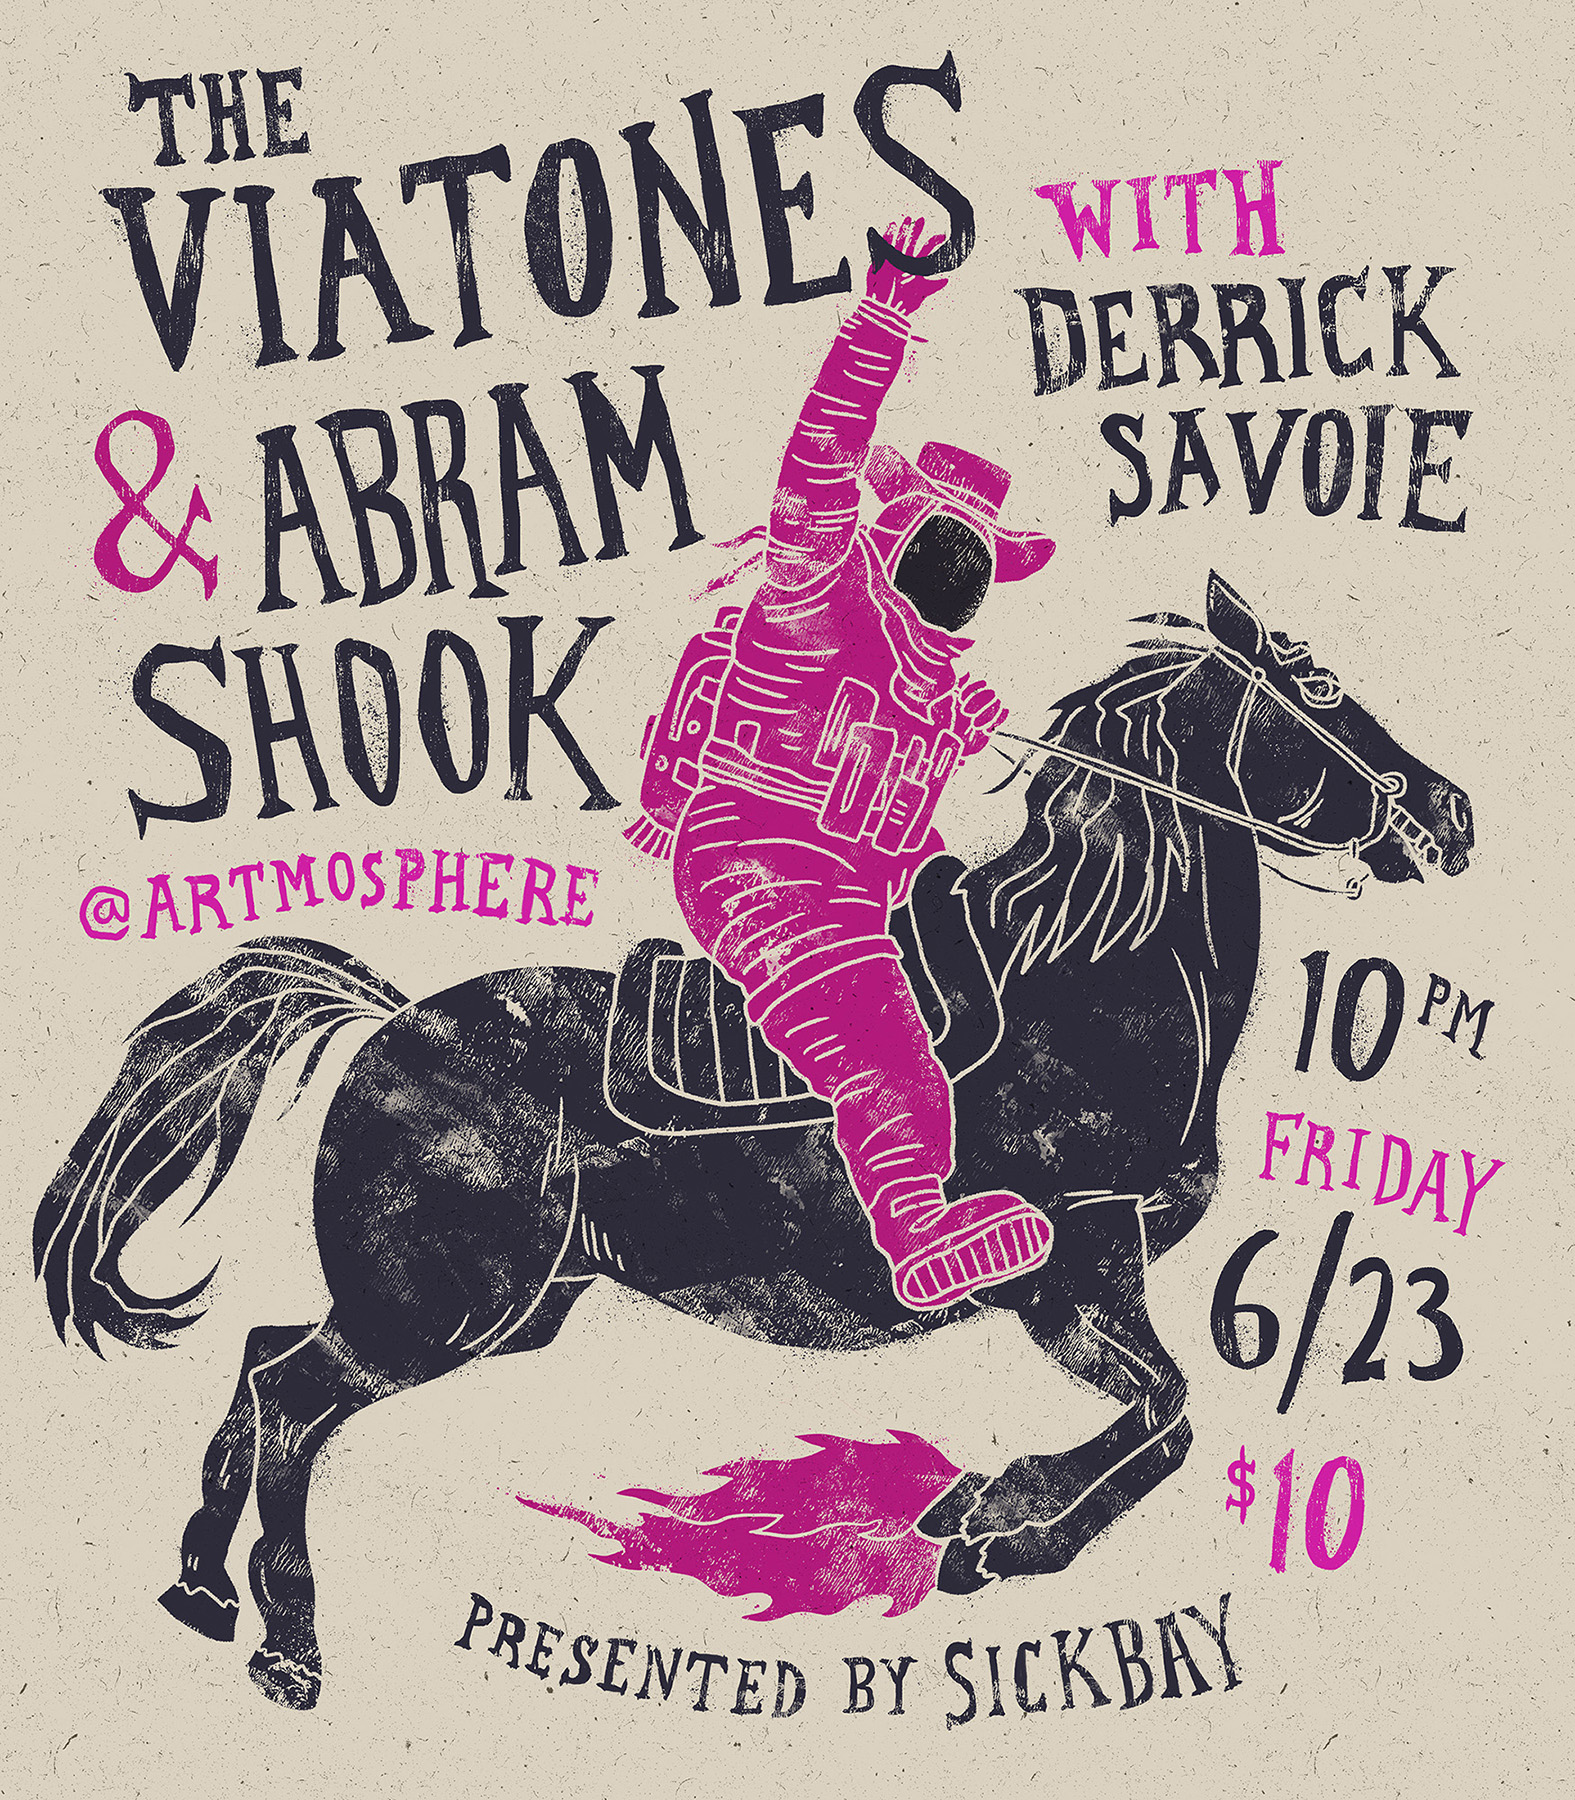 The Viatones & Abram Shook